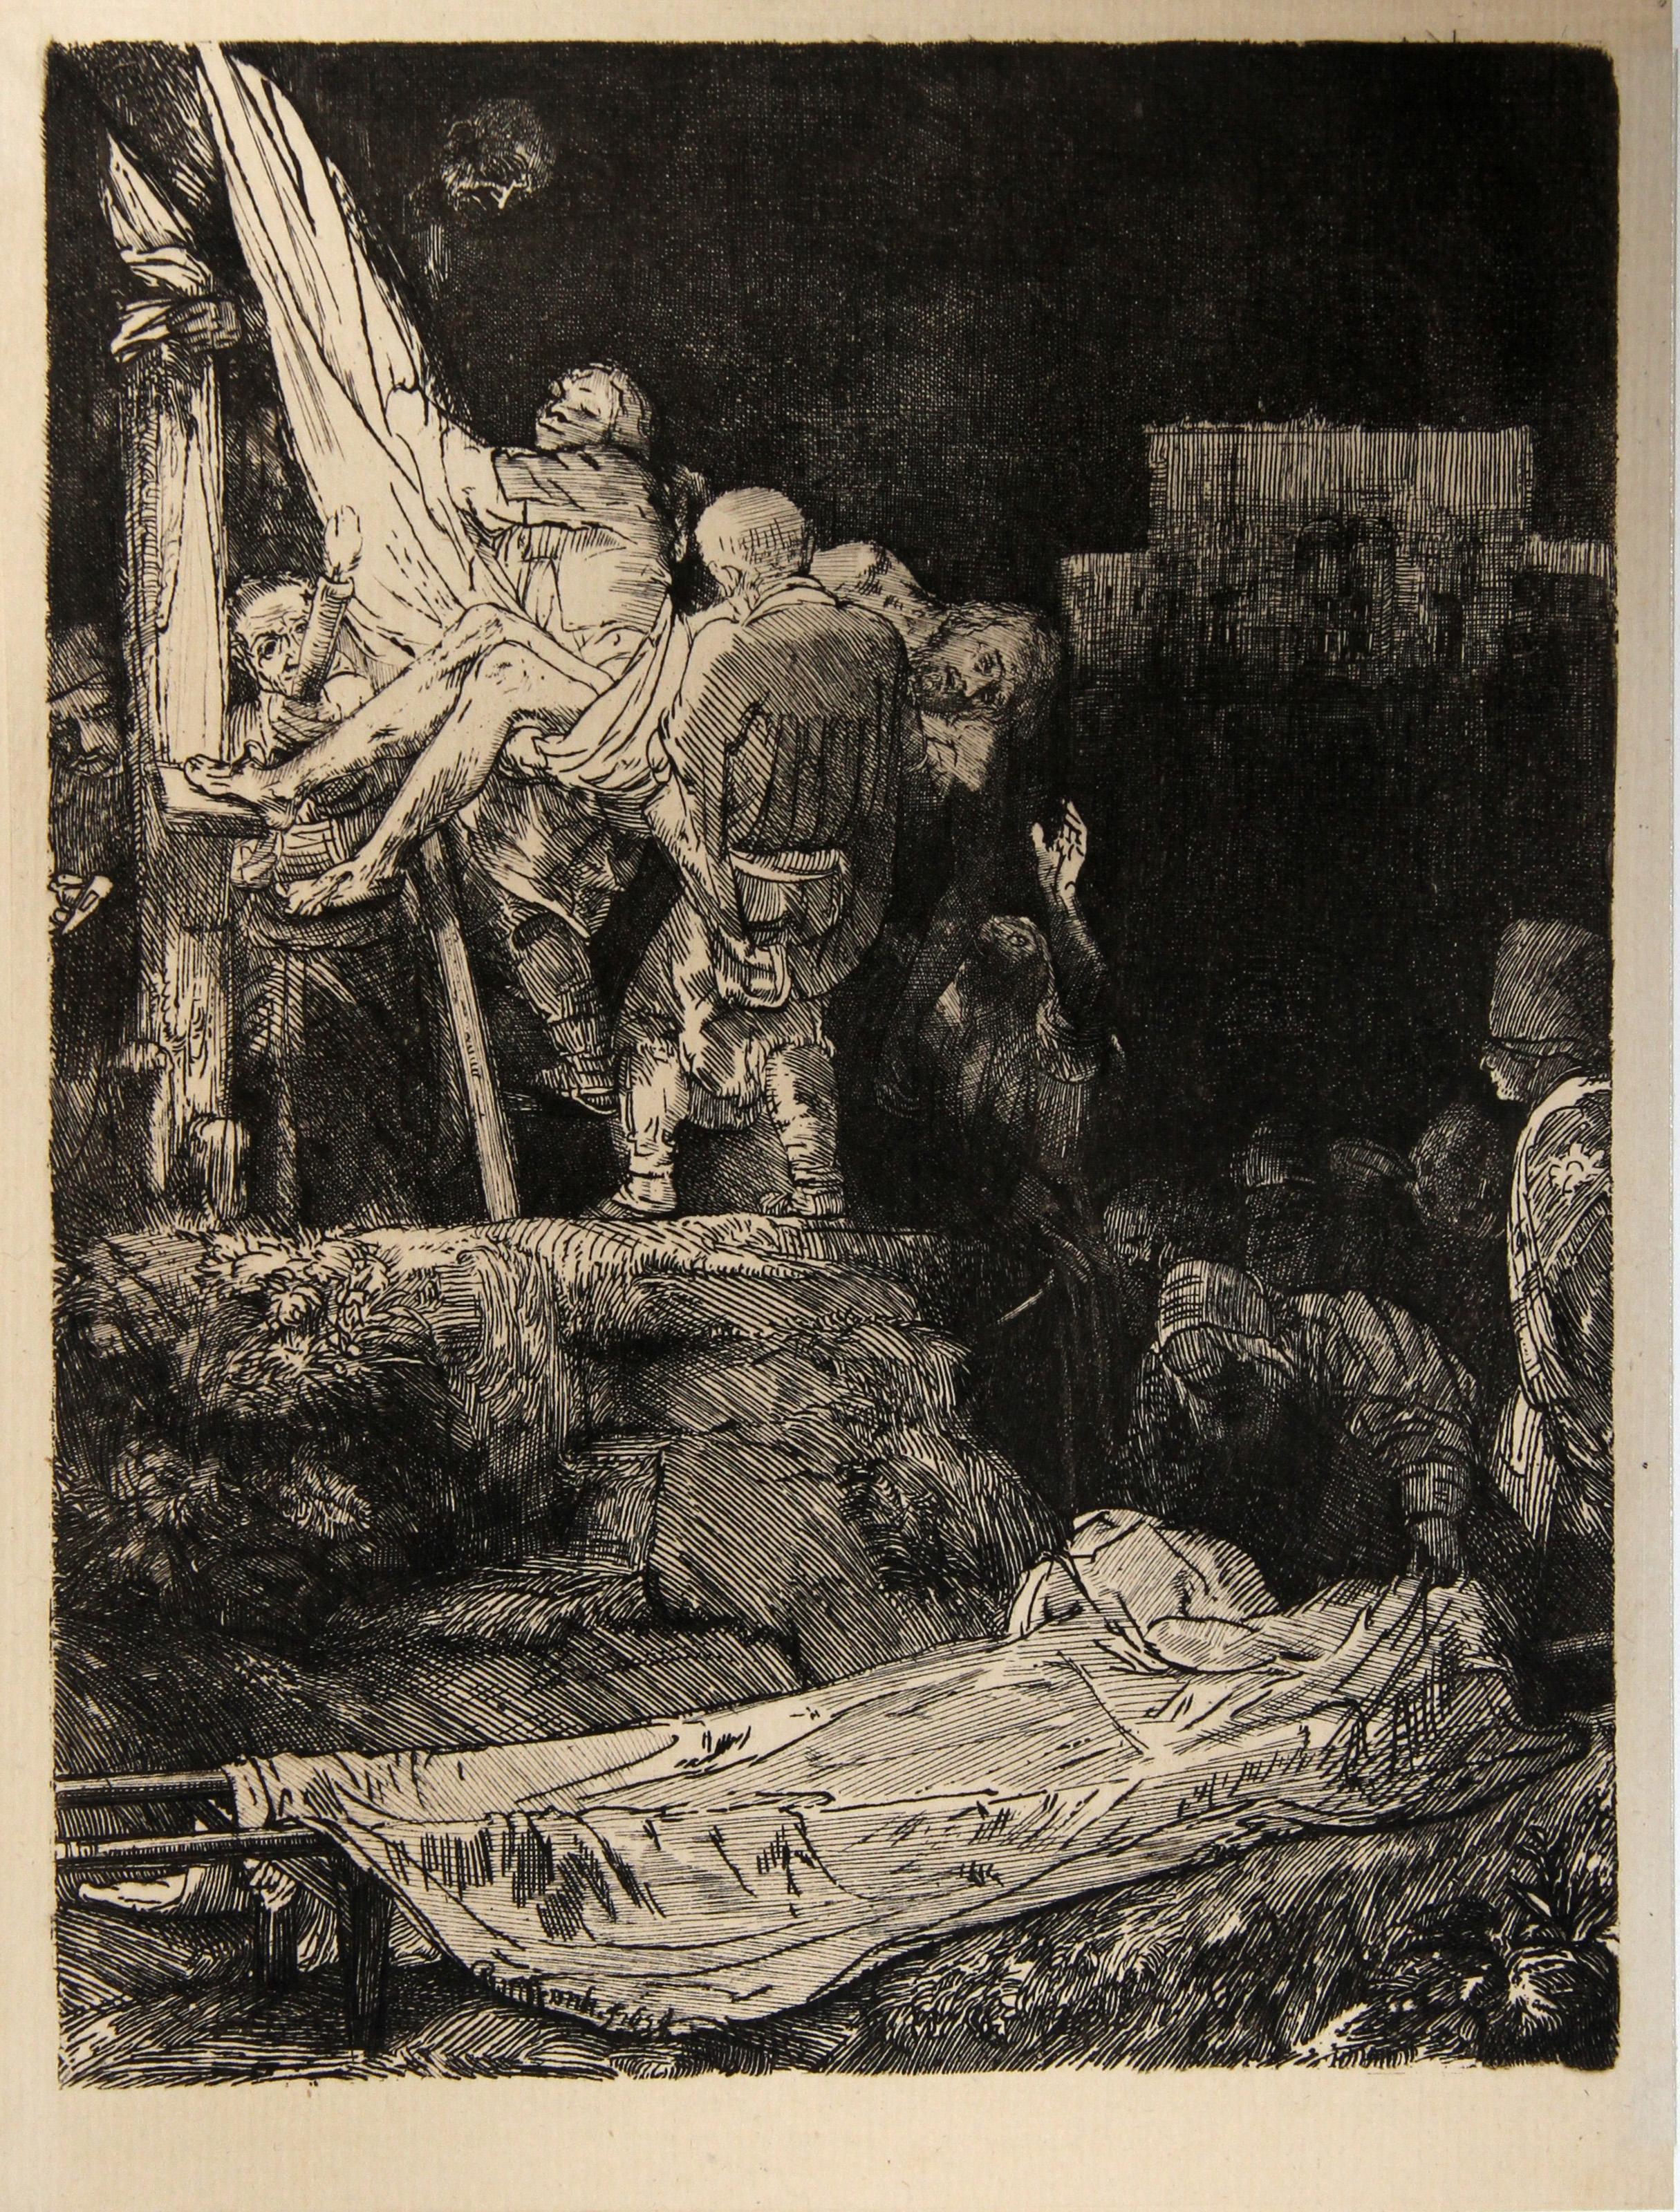 Artist: Rembrandt van Rijn, After by Amand Durand, Dutch (1606 - 1669) -  La Descente de Croix Aux Flambeaux (B280), Year: 1878 (of original 1654), Medium: Heliogravure, Size: 8.25  x 6.25 in. (20.96  x 15.88 cm), Printer: Amand Durand, Description: